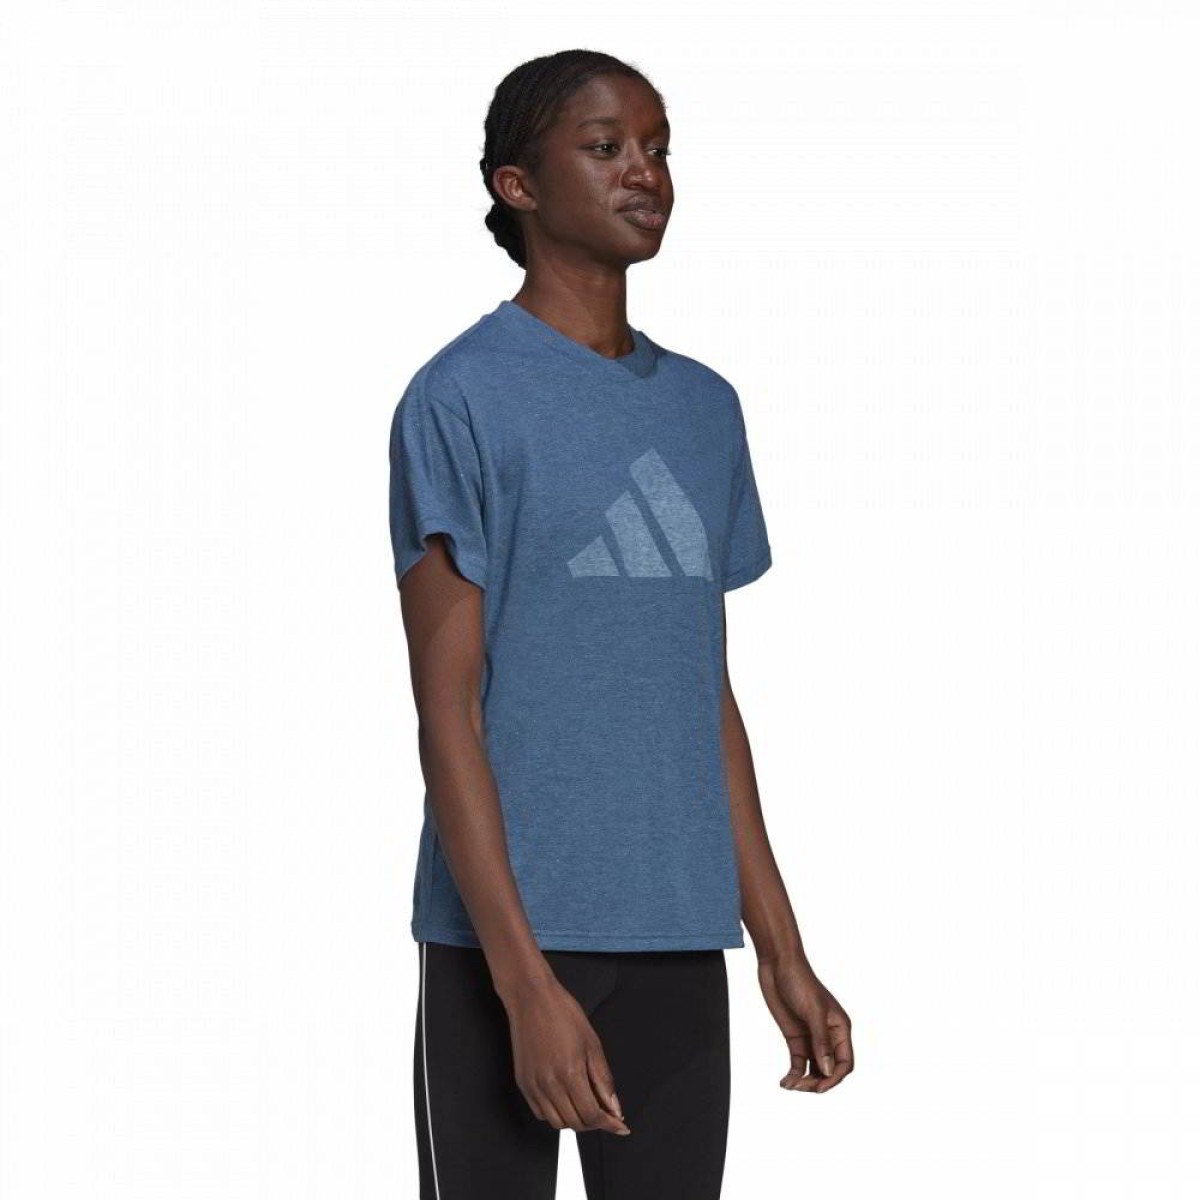 multifunctioneel Respectievelijk Over instelling adidas Damen T-Shirt blau melage TEE 3.0